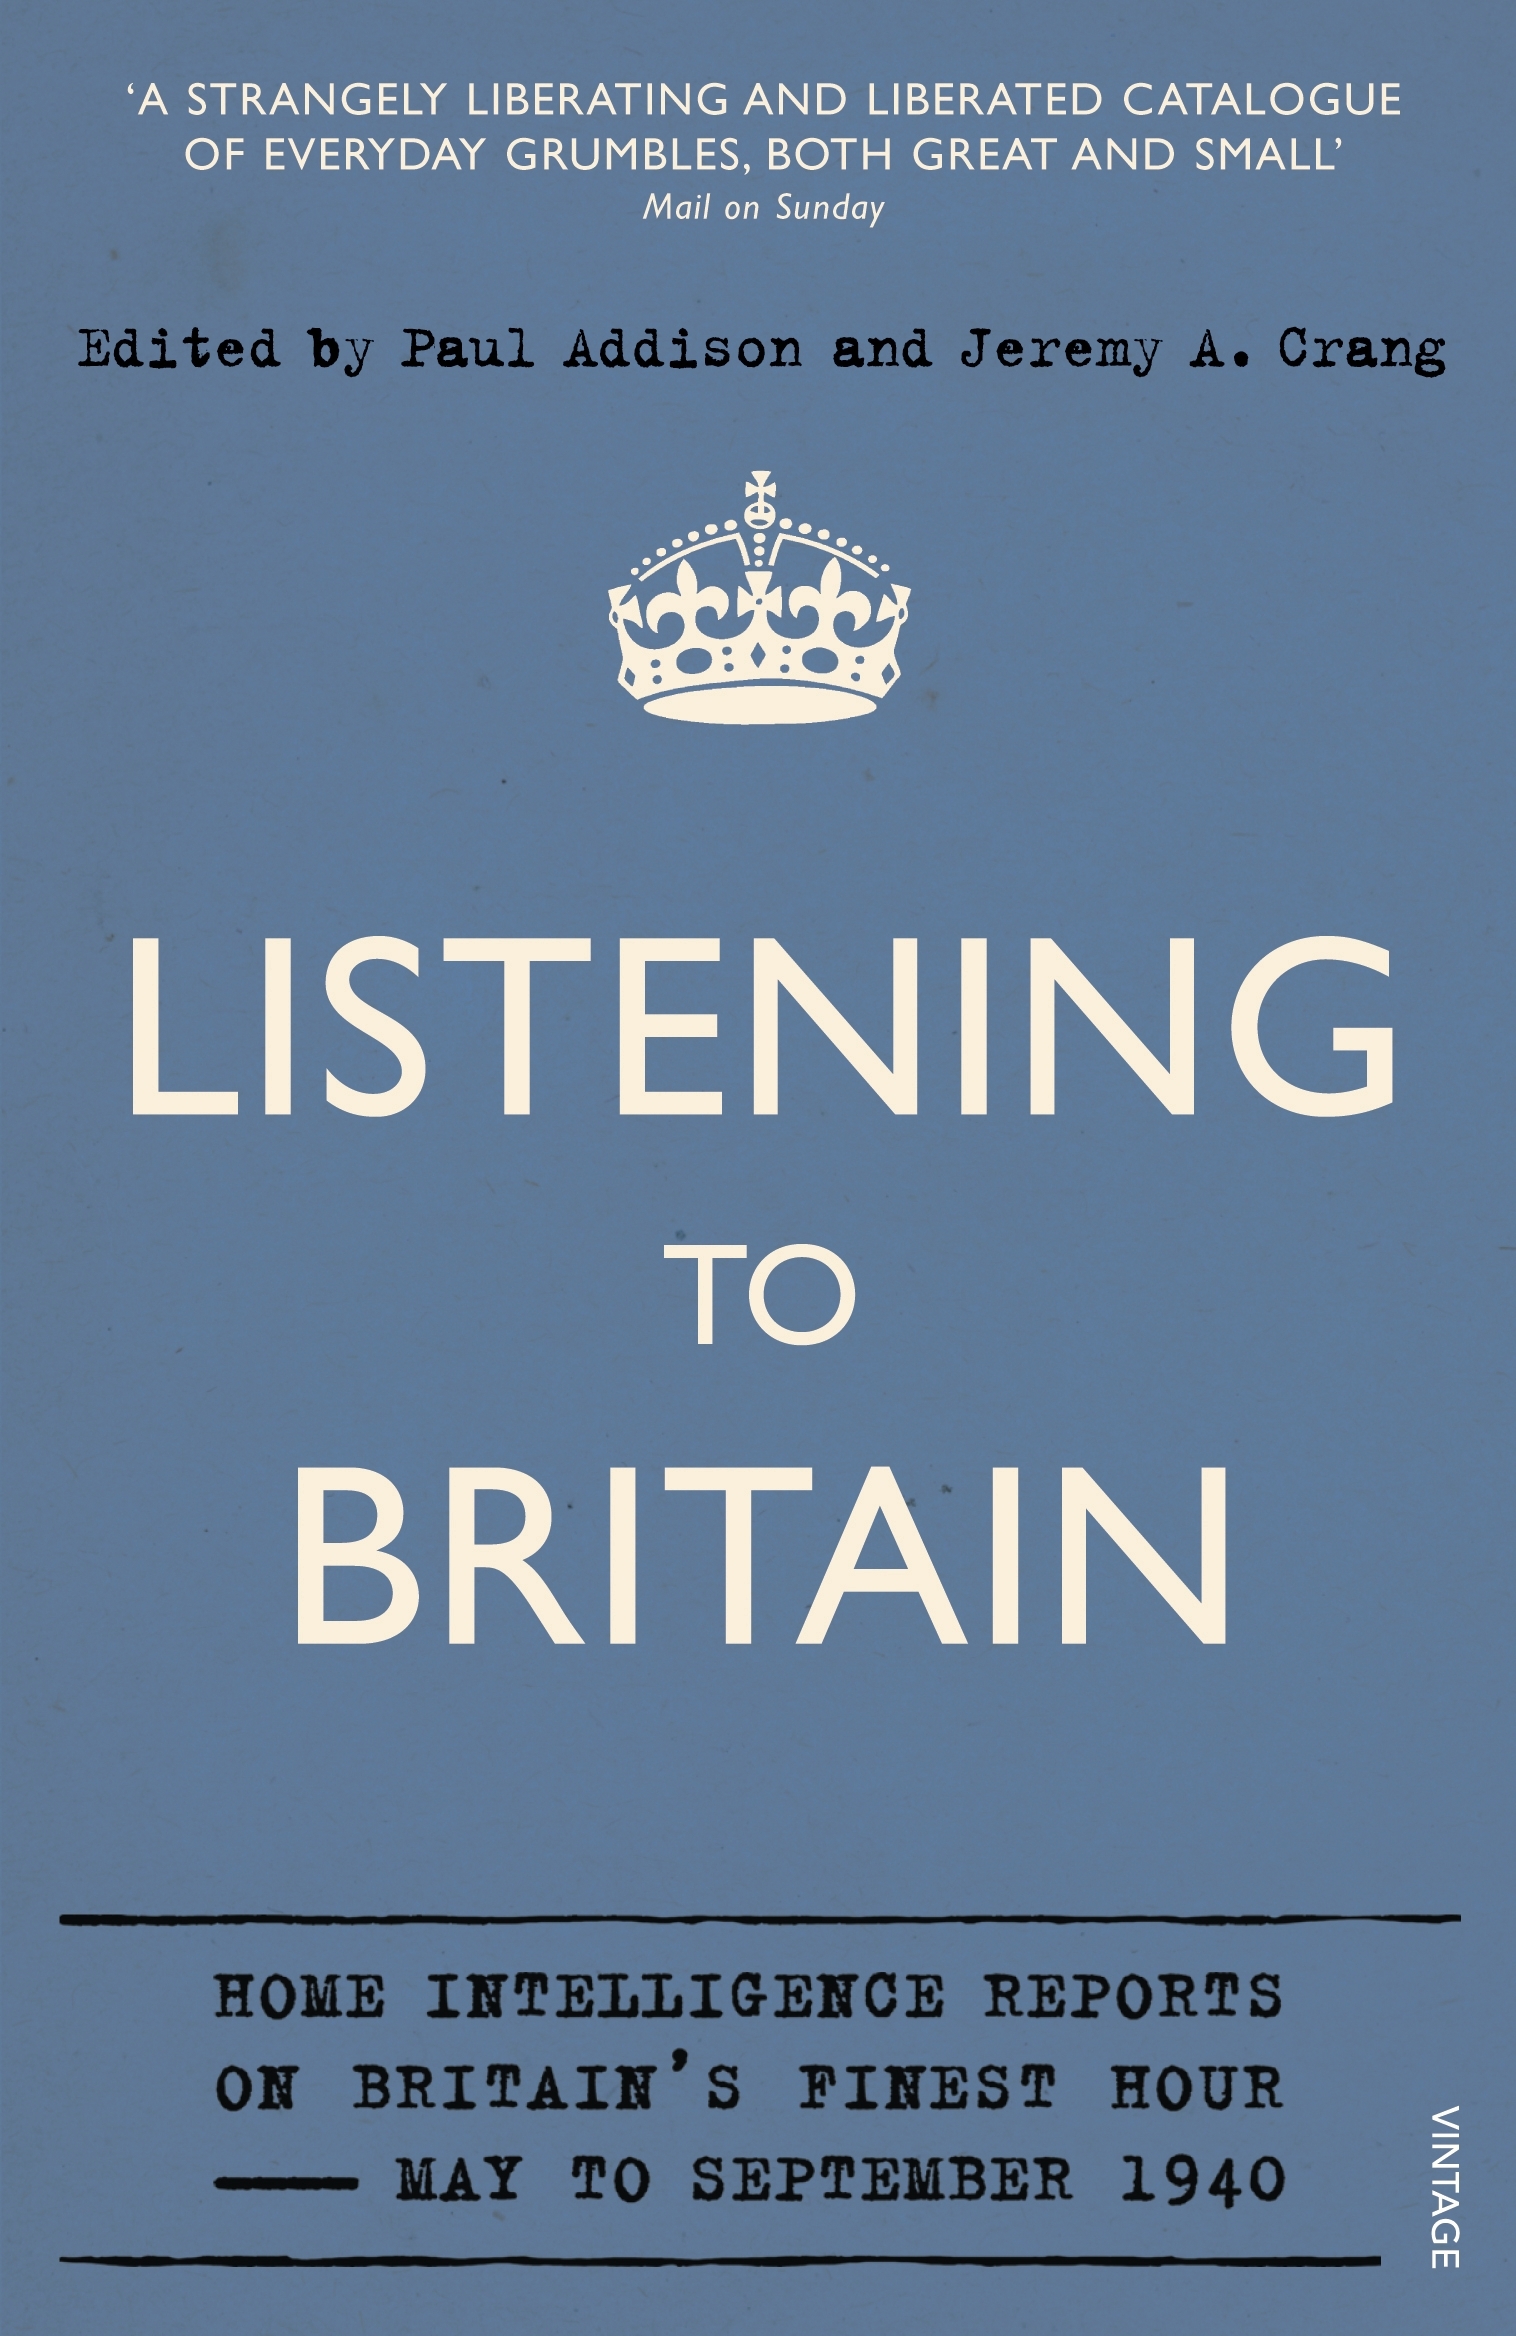 Faces of Britain аудирование. Britain listening